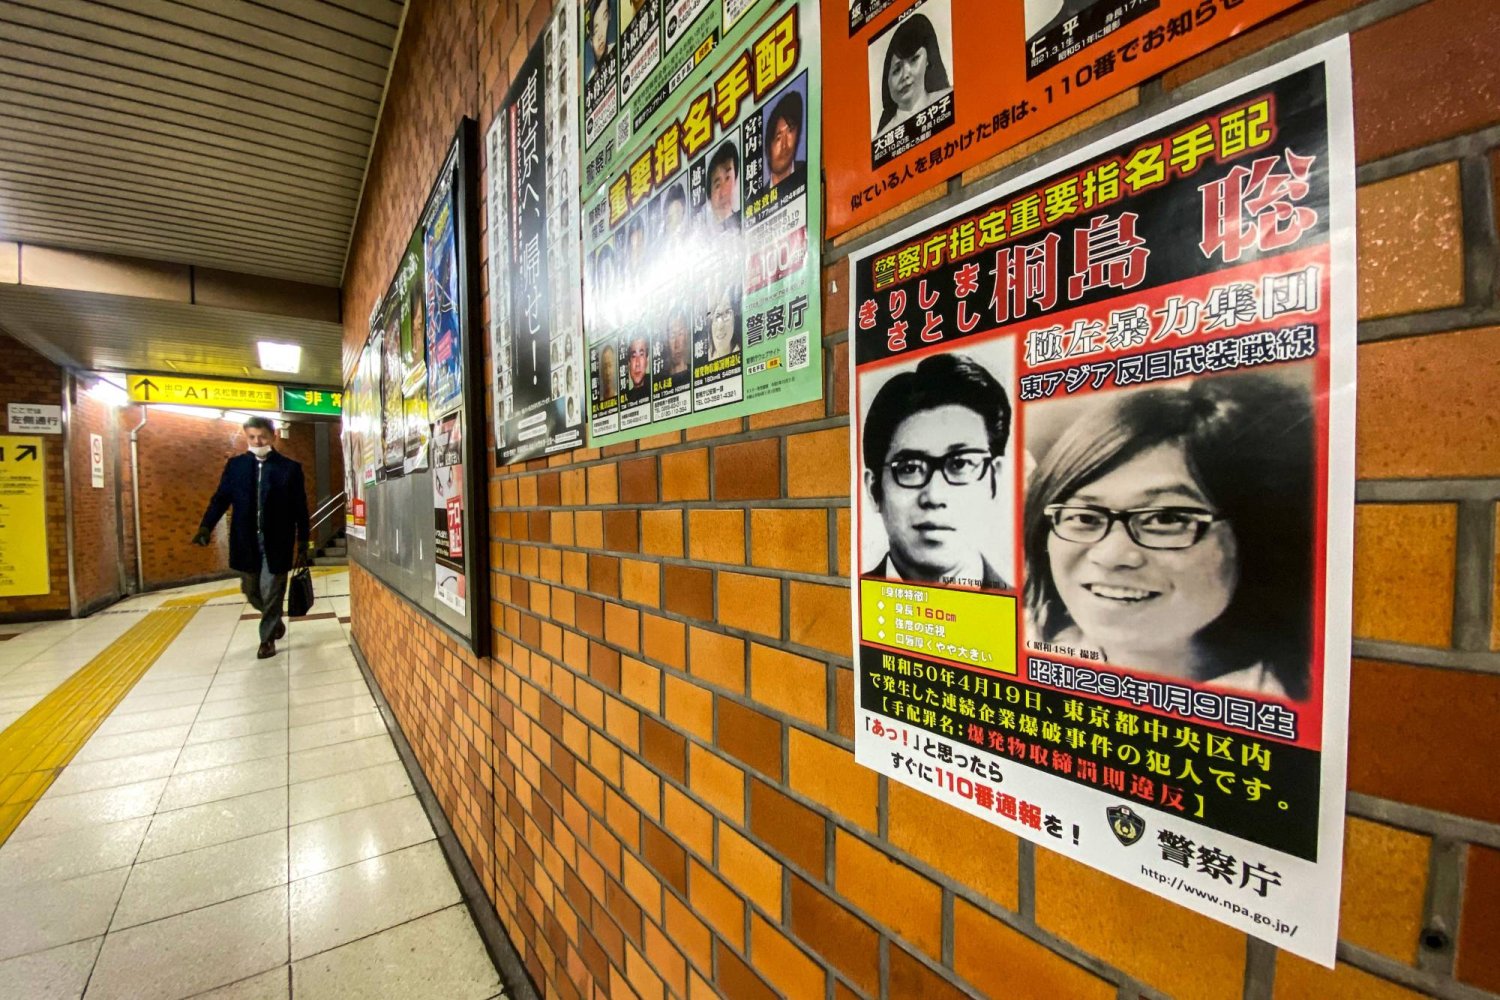 ملصق يُظهر صورة ساتوشي كيريشيما الذي كان عضواً في منظمة متطرفة مسؤولة عن هجمات في العاصمة اليابانية بالسبعينات (أ.ف.ب)